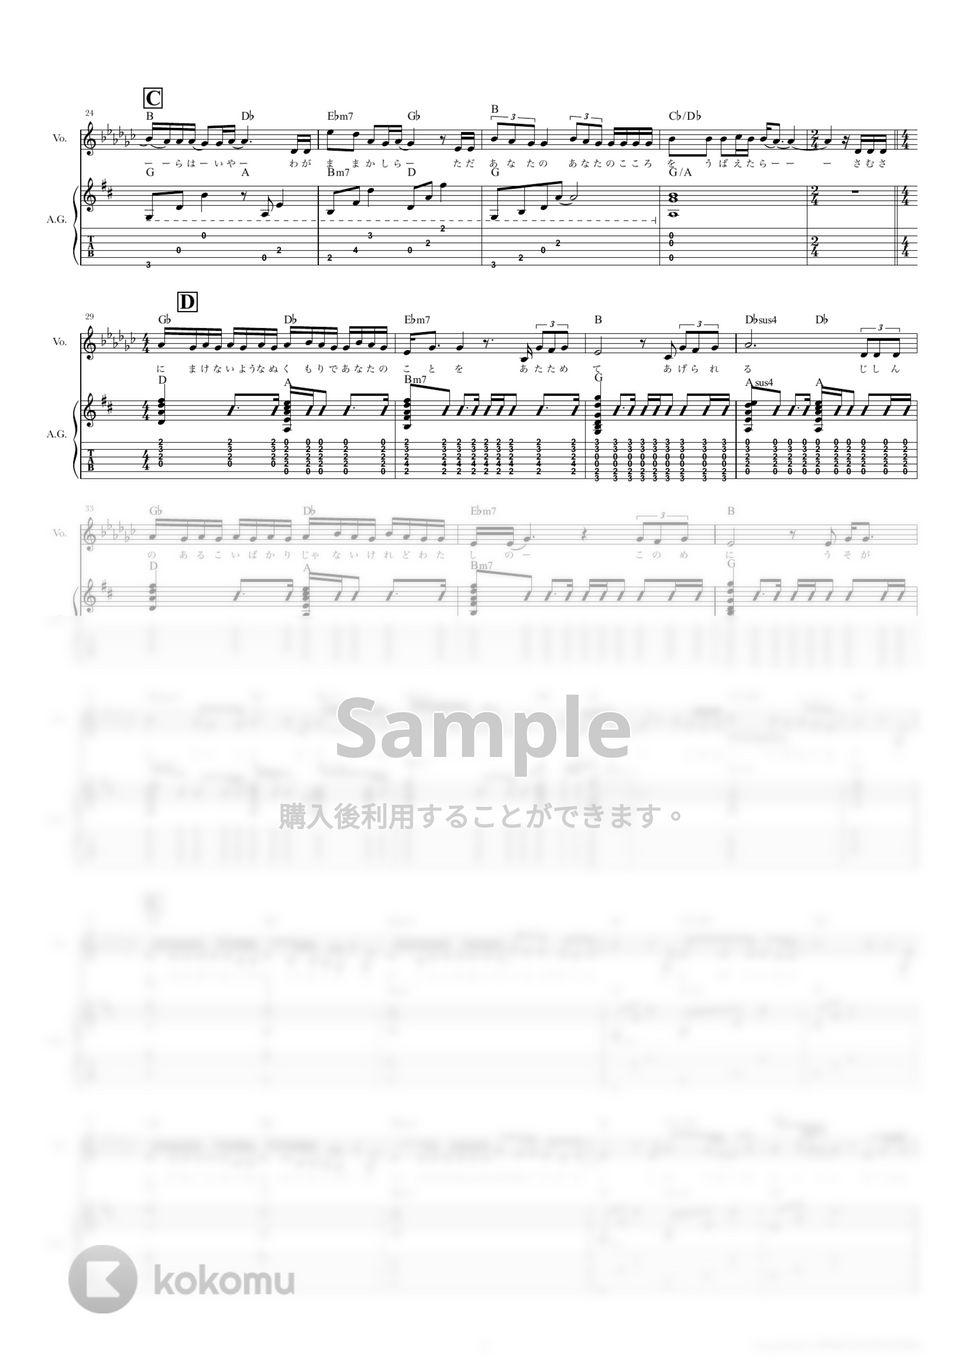 あいみょん - ハート (ギタースコア・歌詞・コード付き) by TRIAD GUITAR SCHOOL